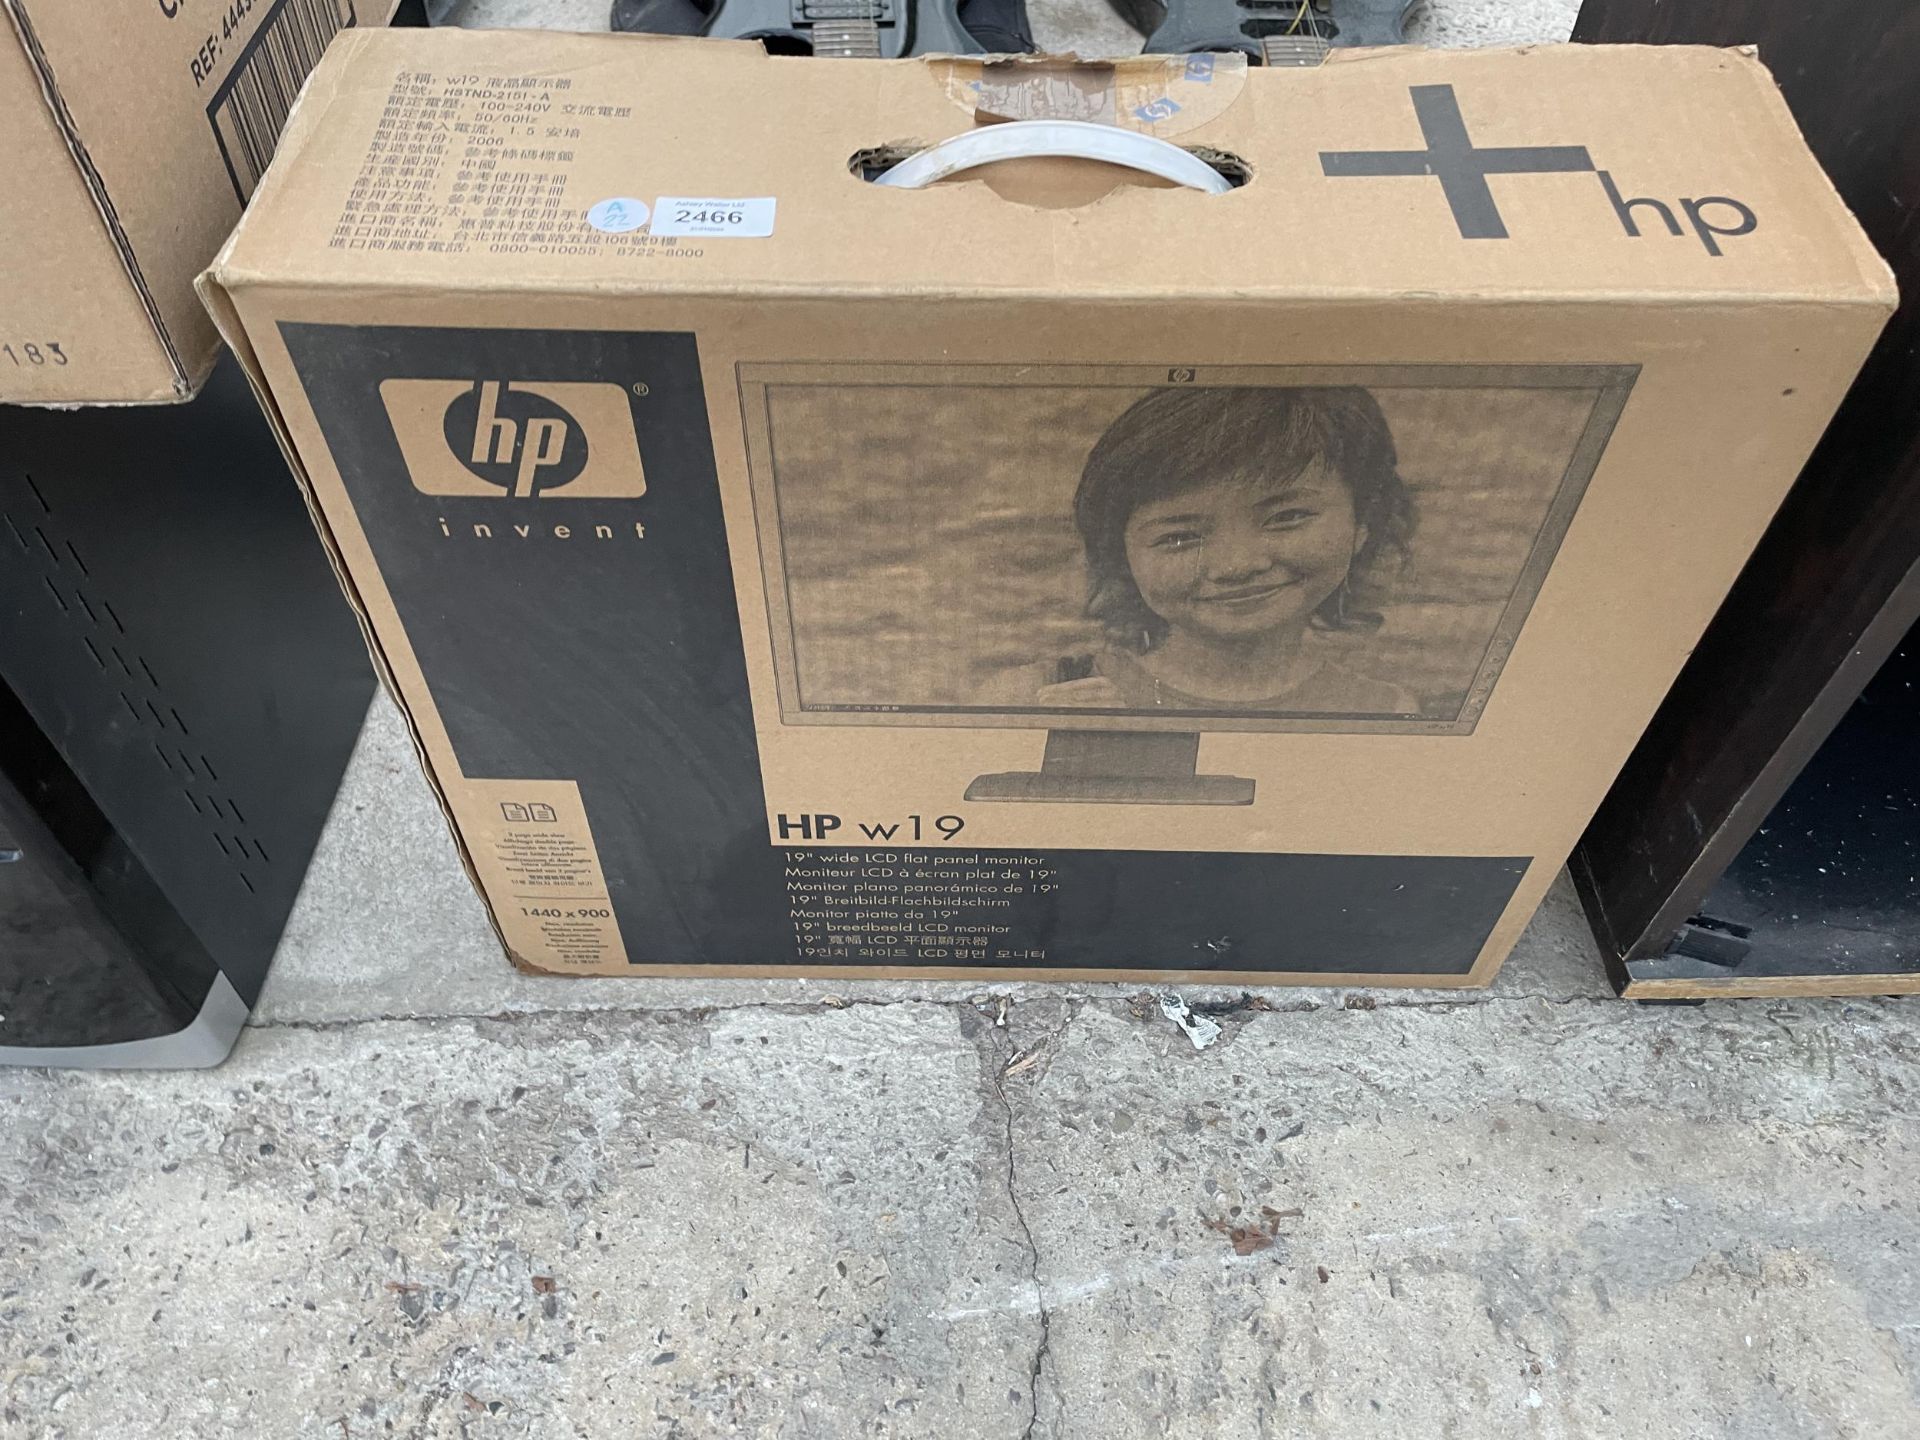 A HP 19" COMPUTER MONITOR